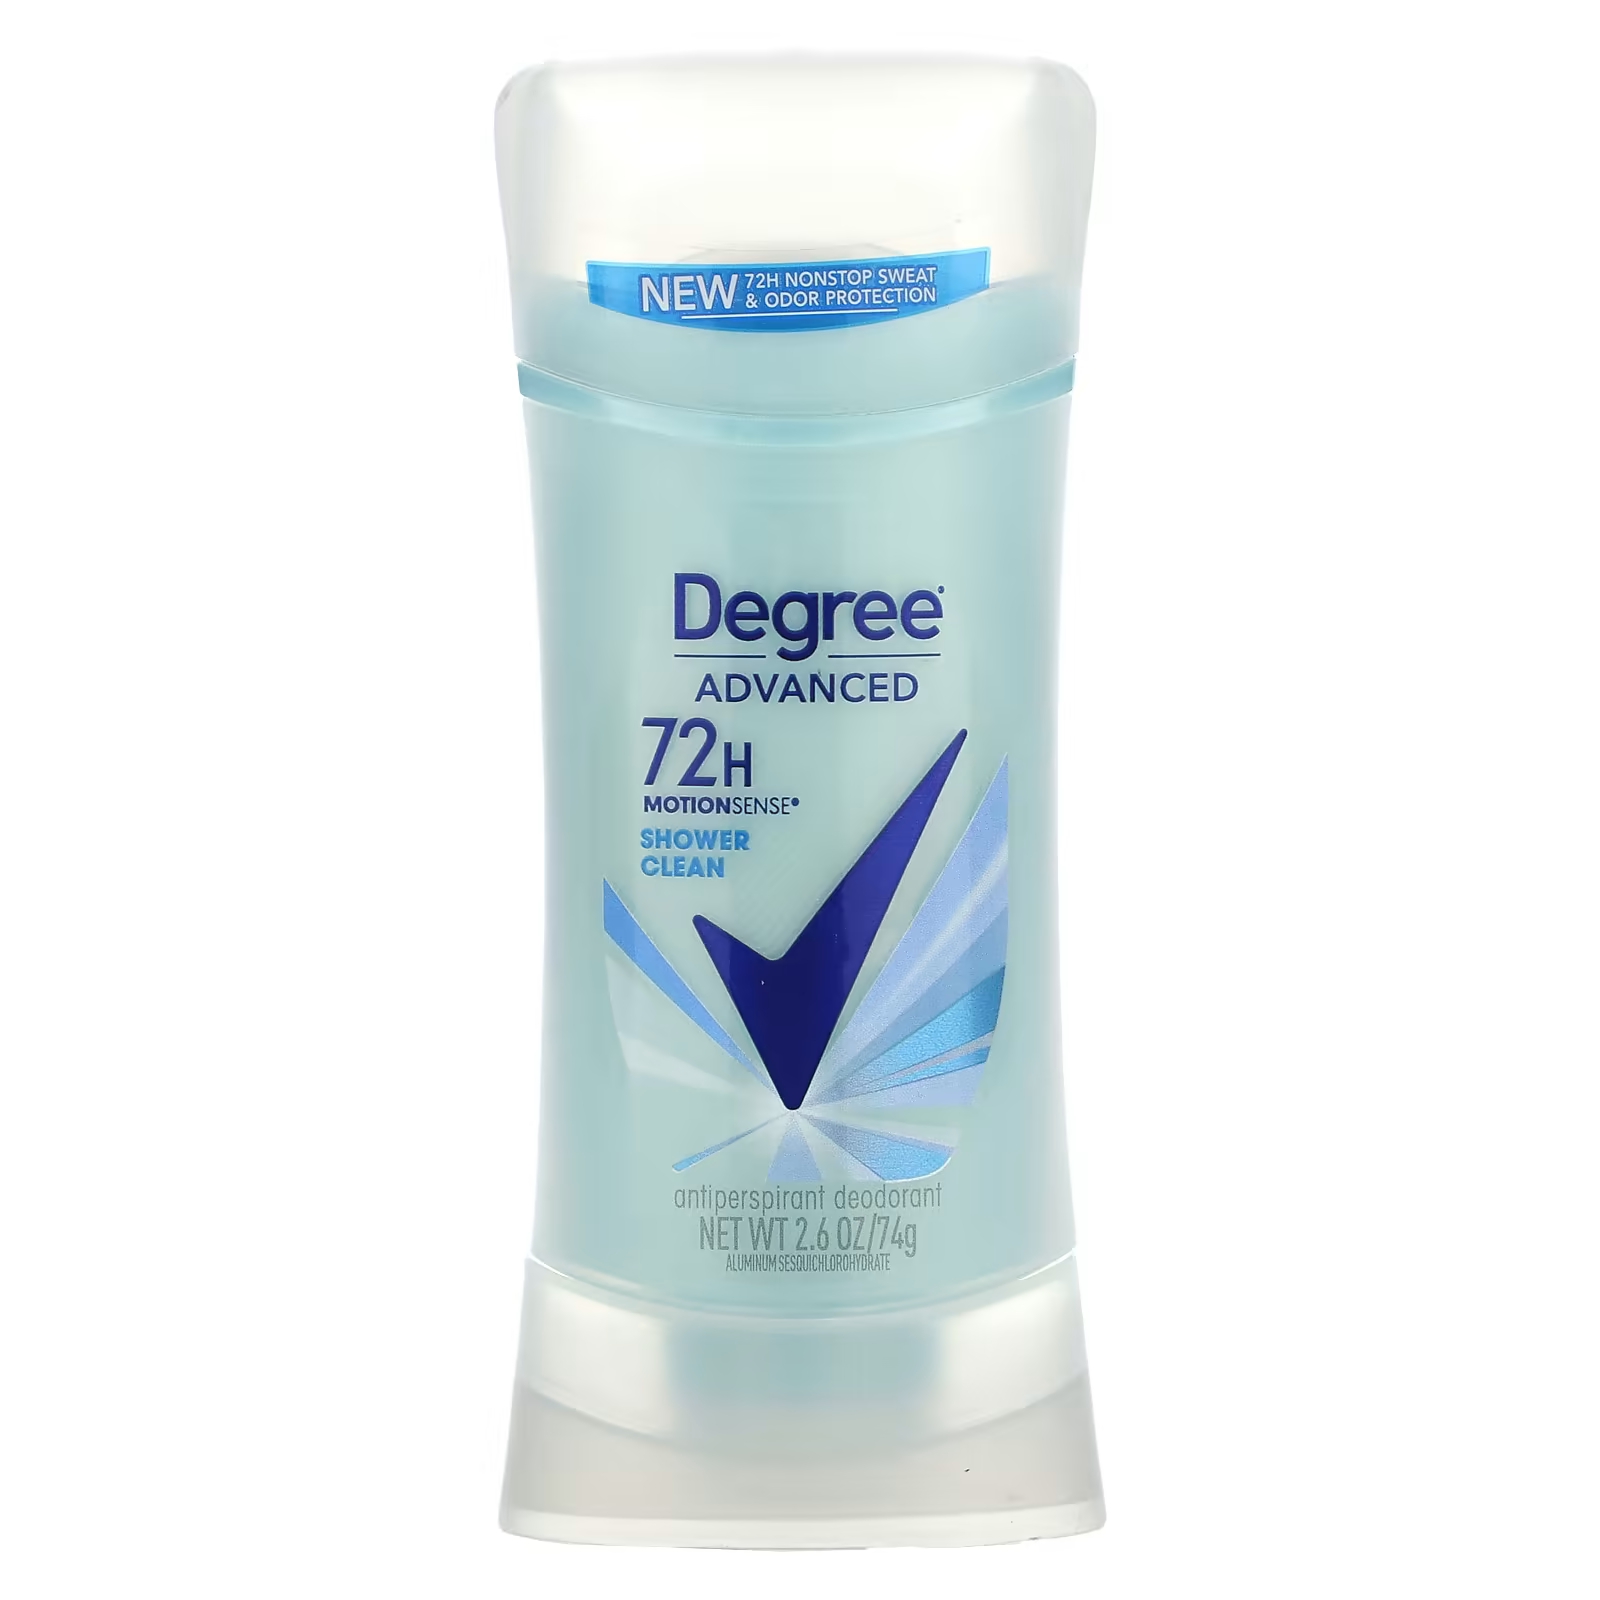 цена Дезодорант-антиперспирант Degree Advanced 72H MotionSense для очистки